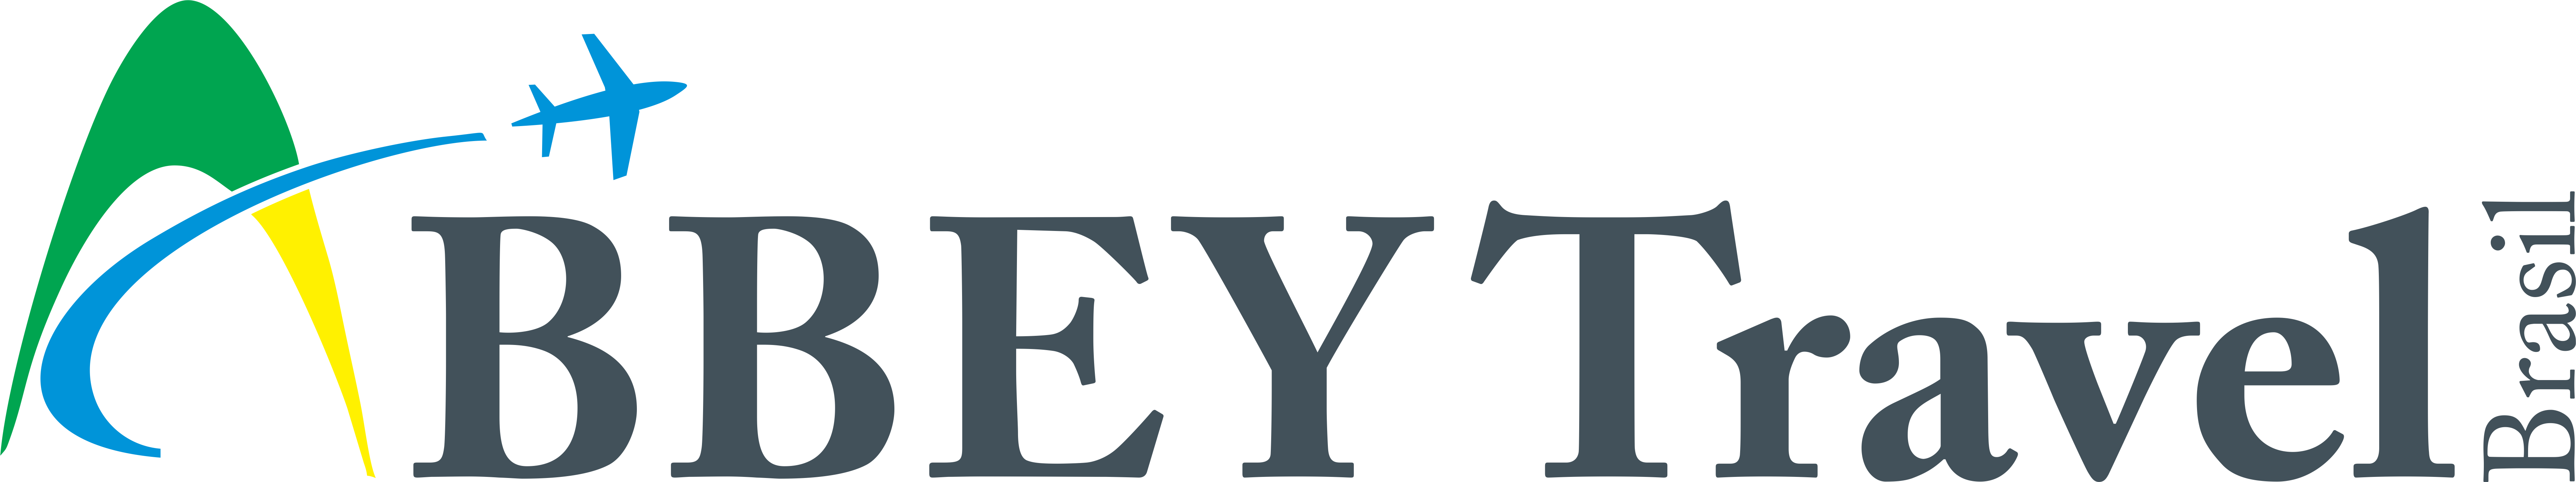 Logo Abbey simplificado